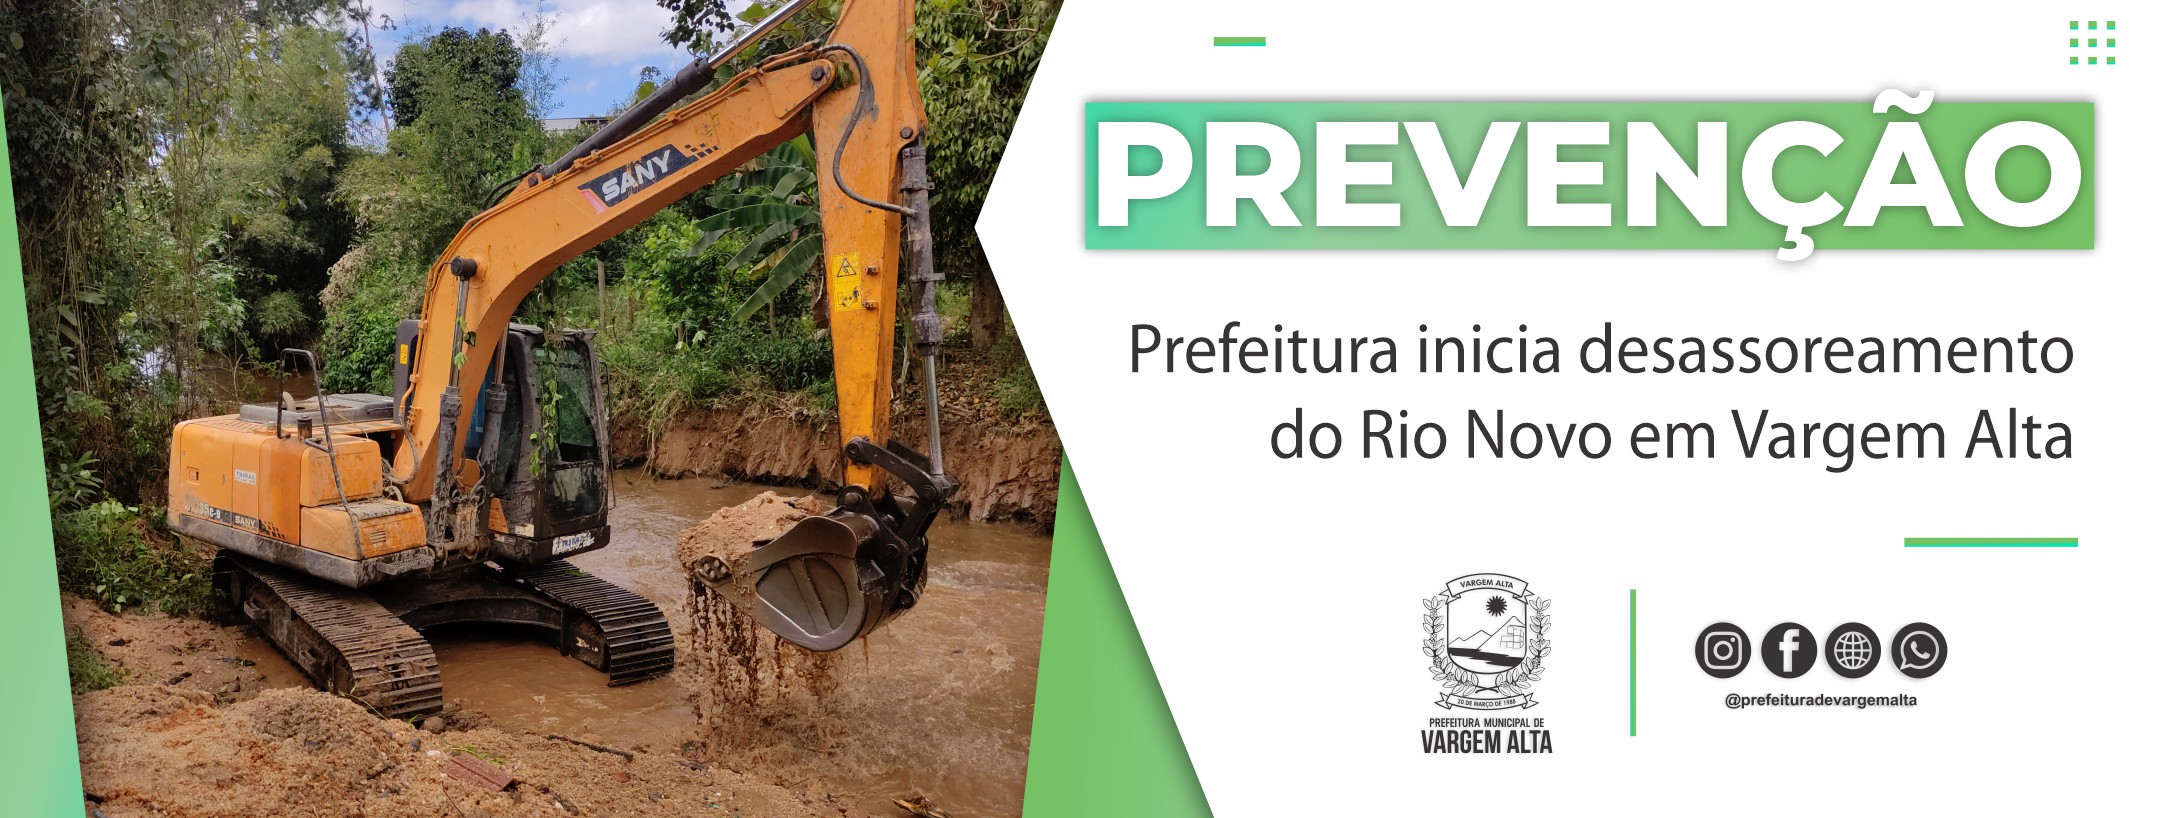 Prefeitura inicia desassoreamento do Rio Novo em Vargem Alta